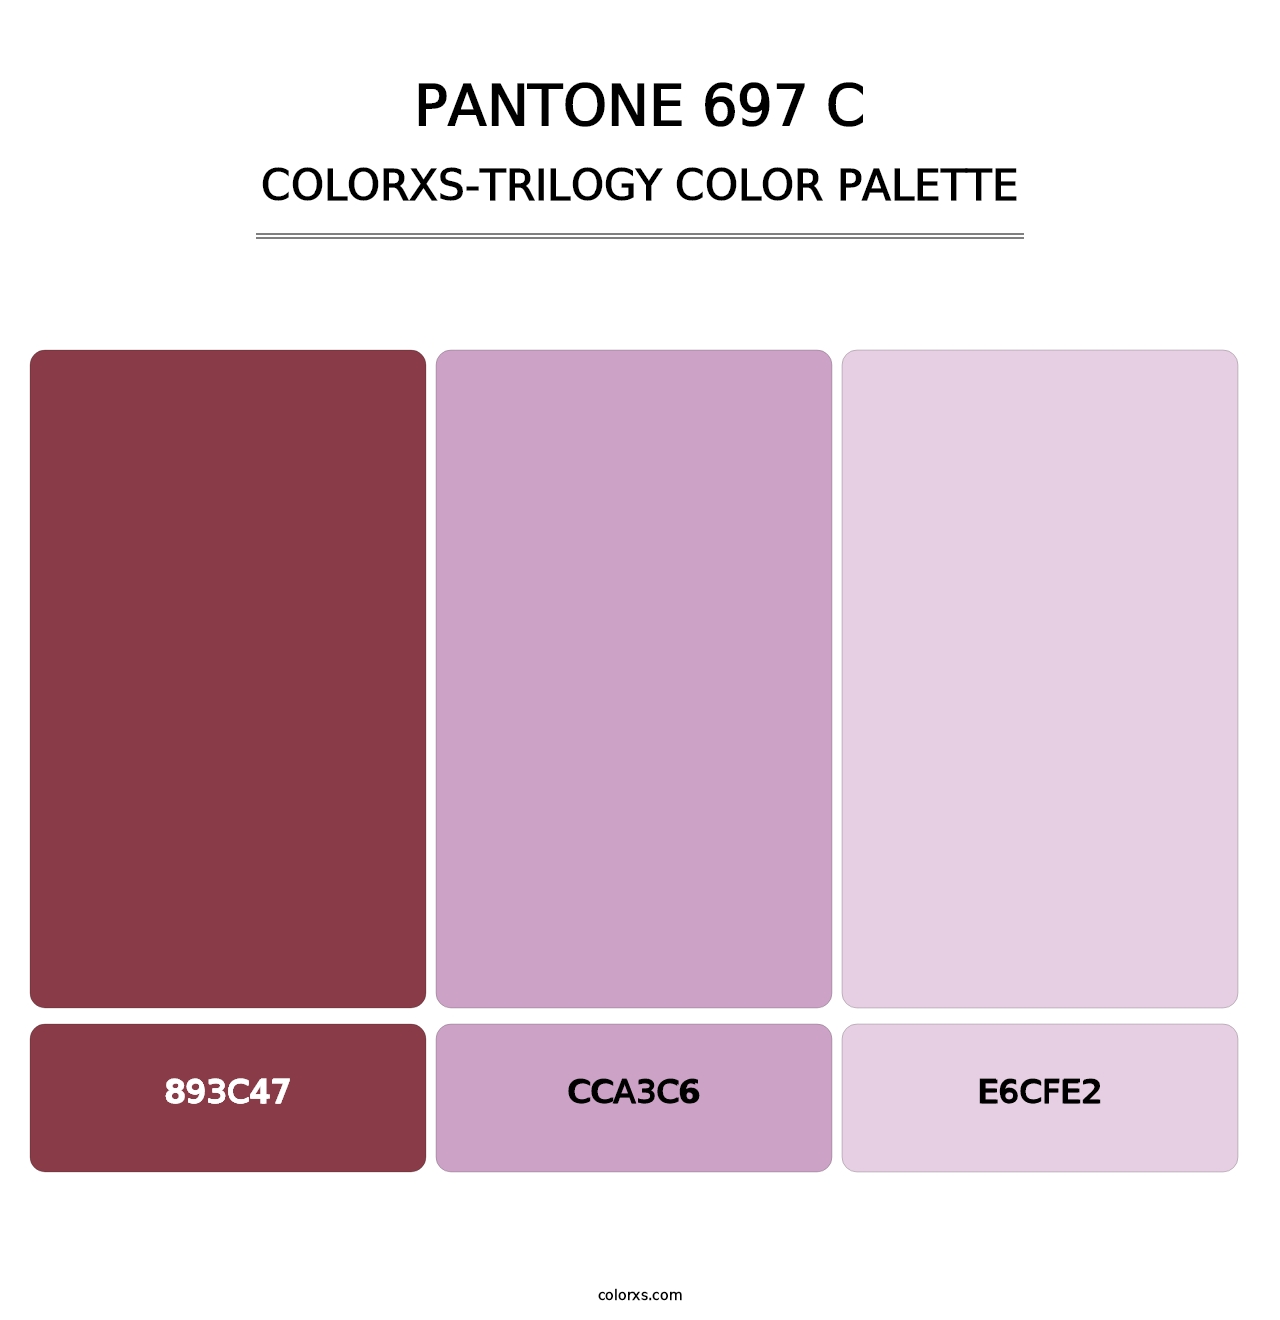 PANTONE 697 C - Colorxs Trilogy Palette